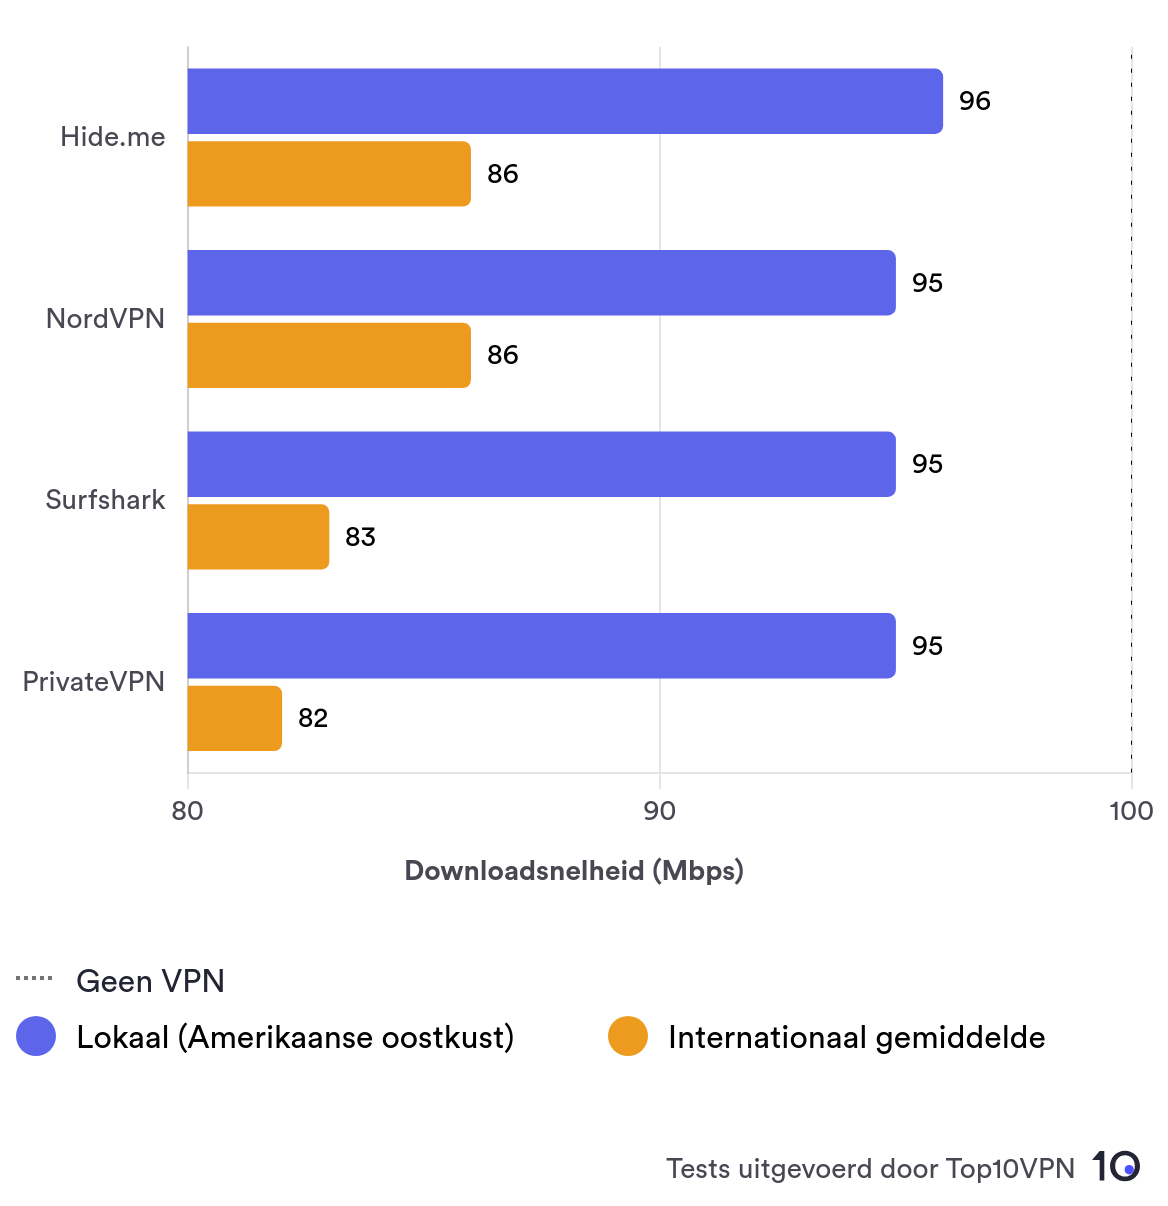 Vergelijkende staafdiagram die Hide.me's lokale snelheidsprestaties laat zien in vergelijking met andere leidende VPN-aanbieders.